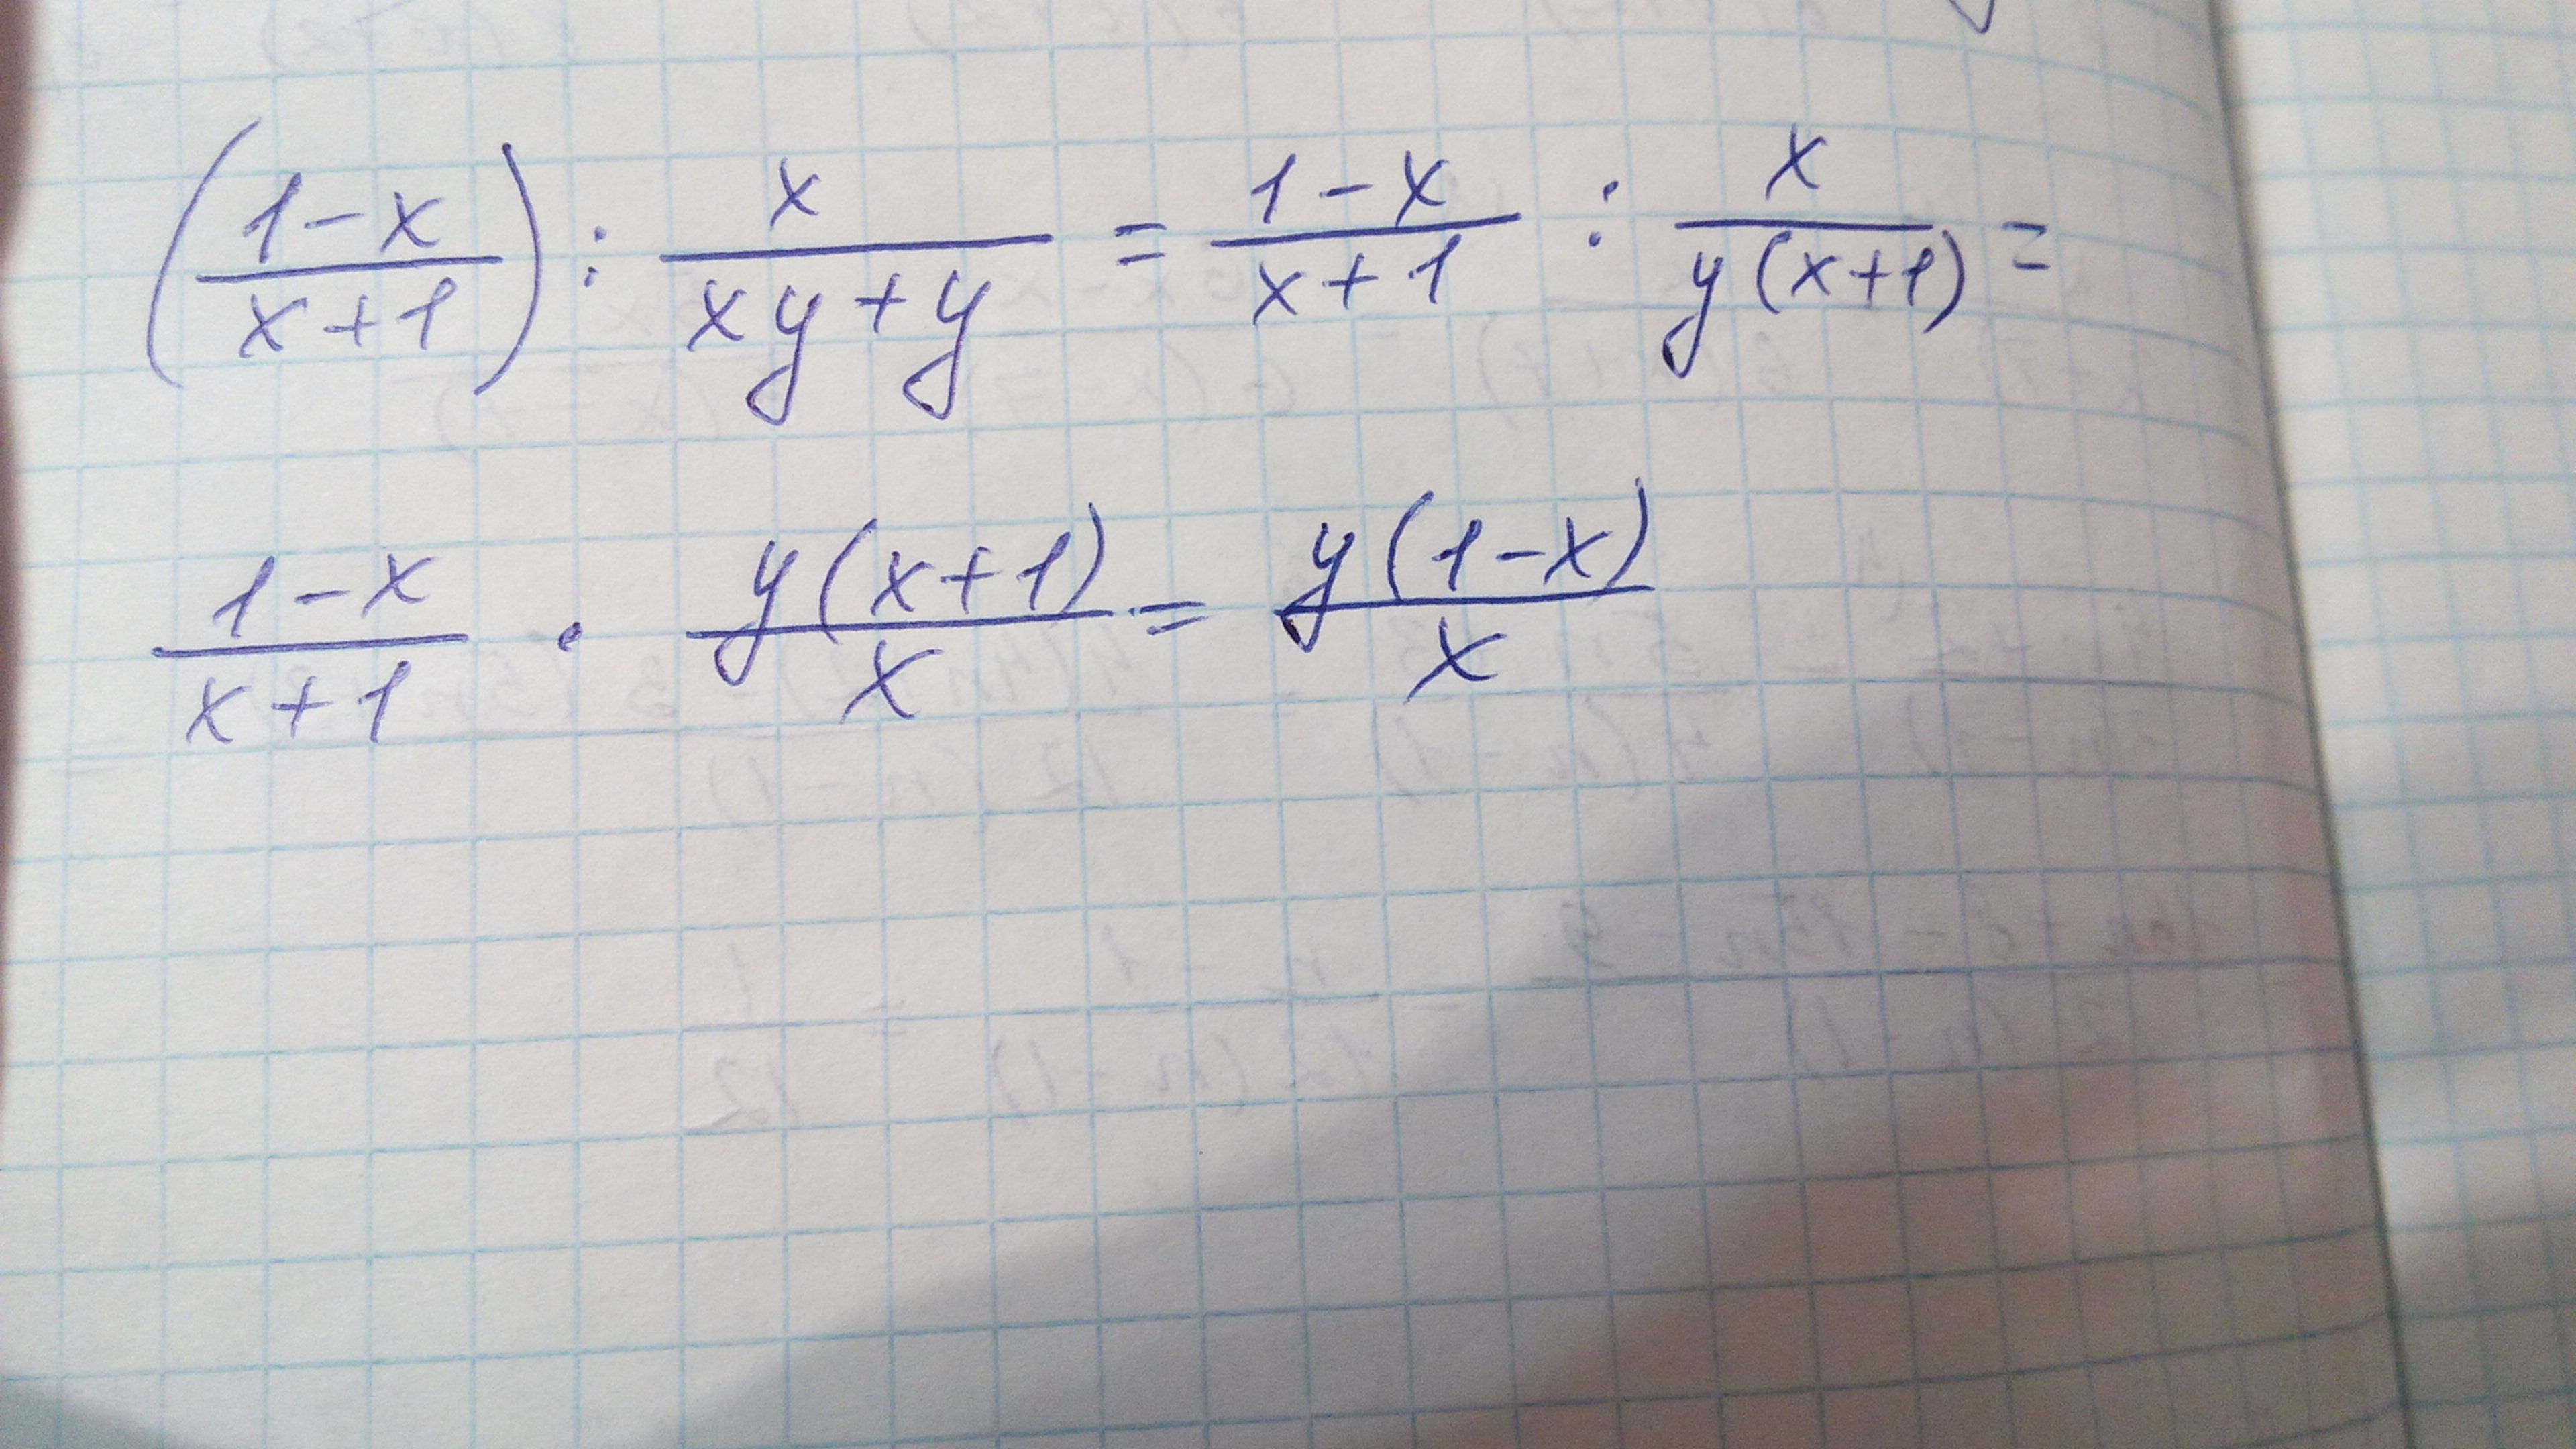 1 x 1 y 1 36. (X-1)(X+1). 1/X^2. 1x1. (X+1)(X+1)(X++1) степень.